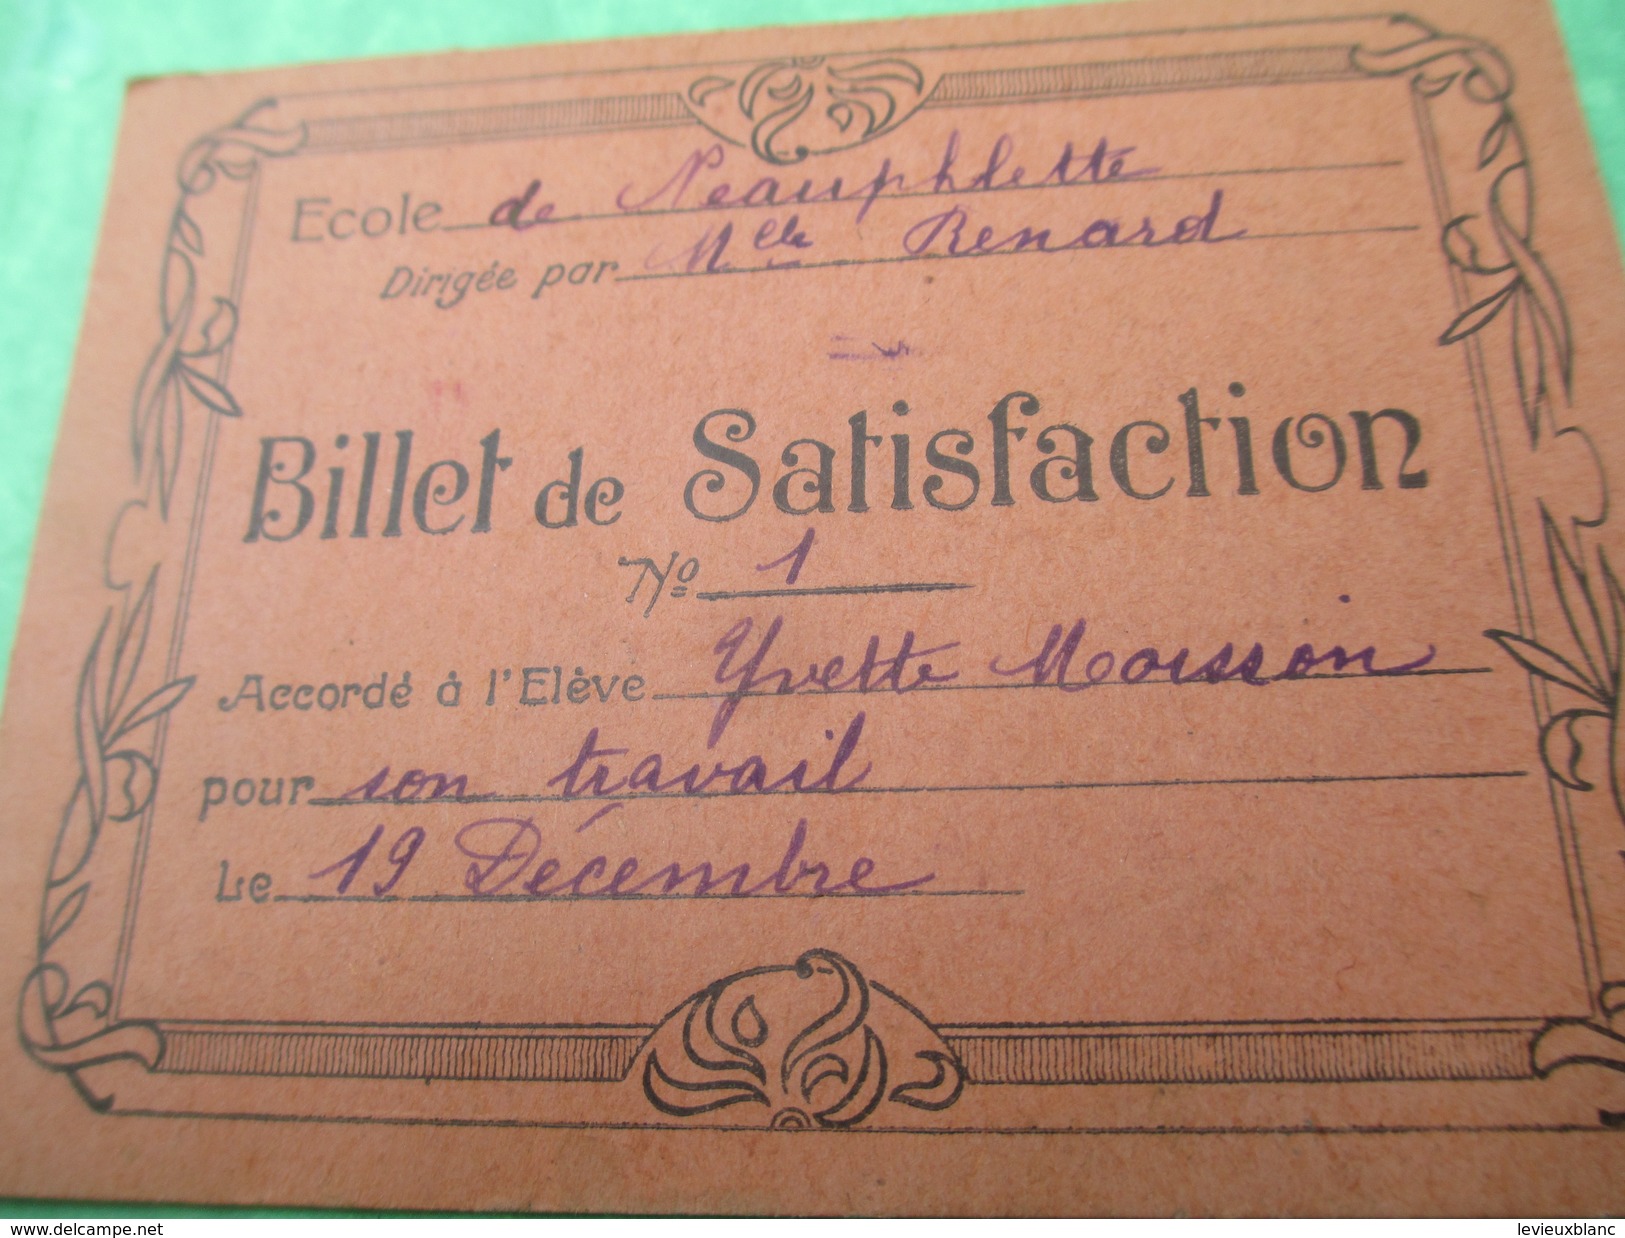 Billets De Satisfaction/Ecole De NEAUPHLETTE/S Et O/Directrice Melle Renard/Yvette Et Antoinette Moisson/1932     CAH156 - Diploma & School Reports